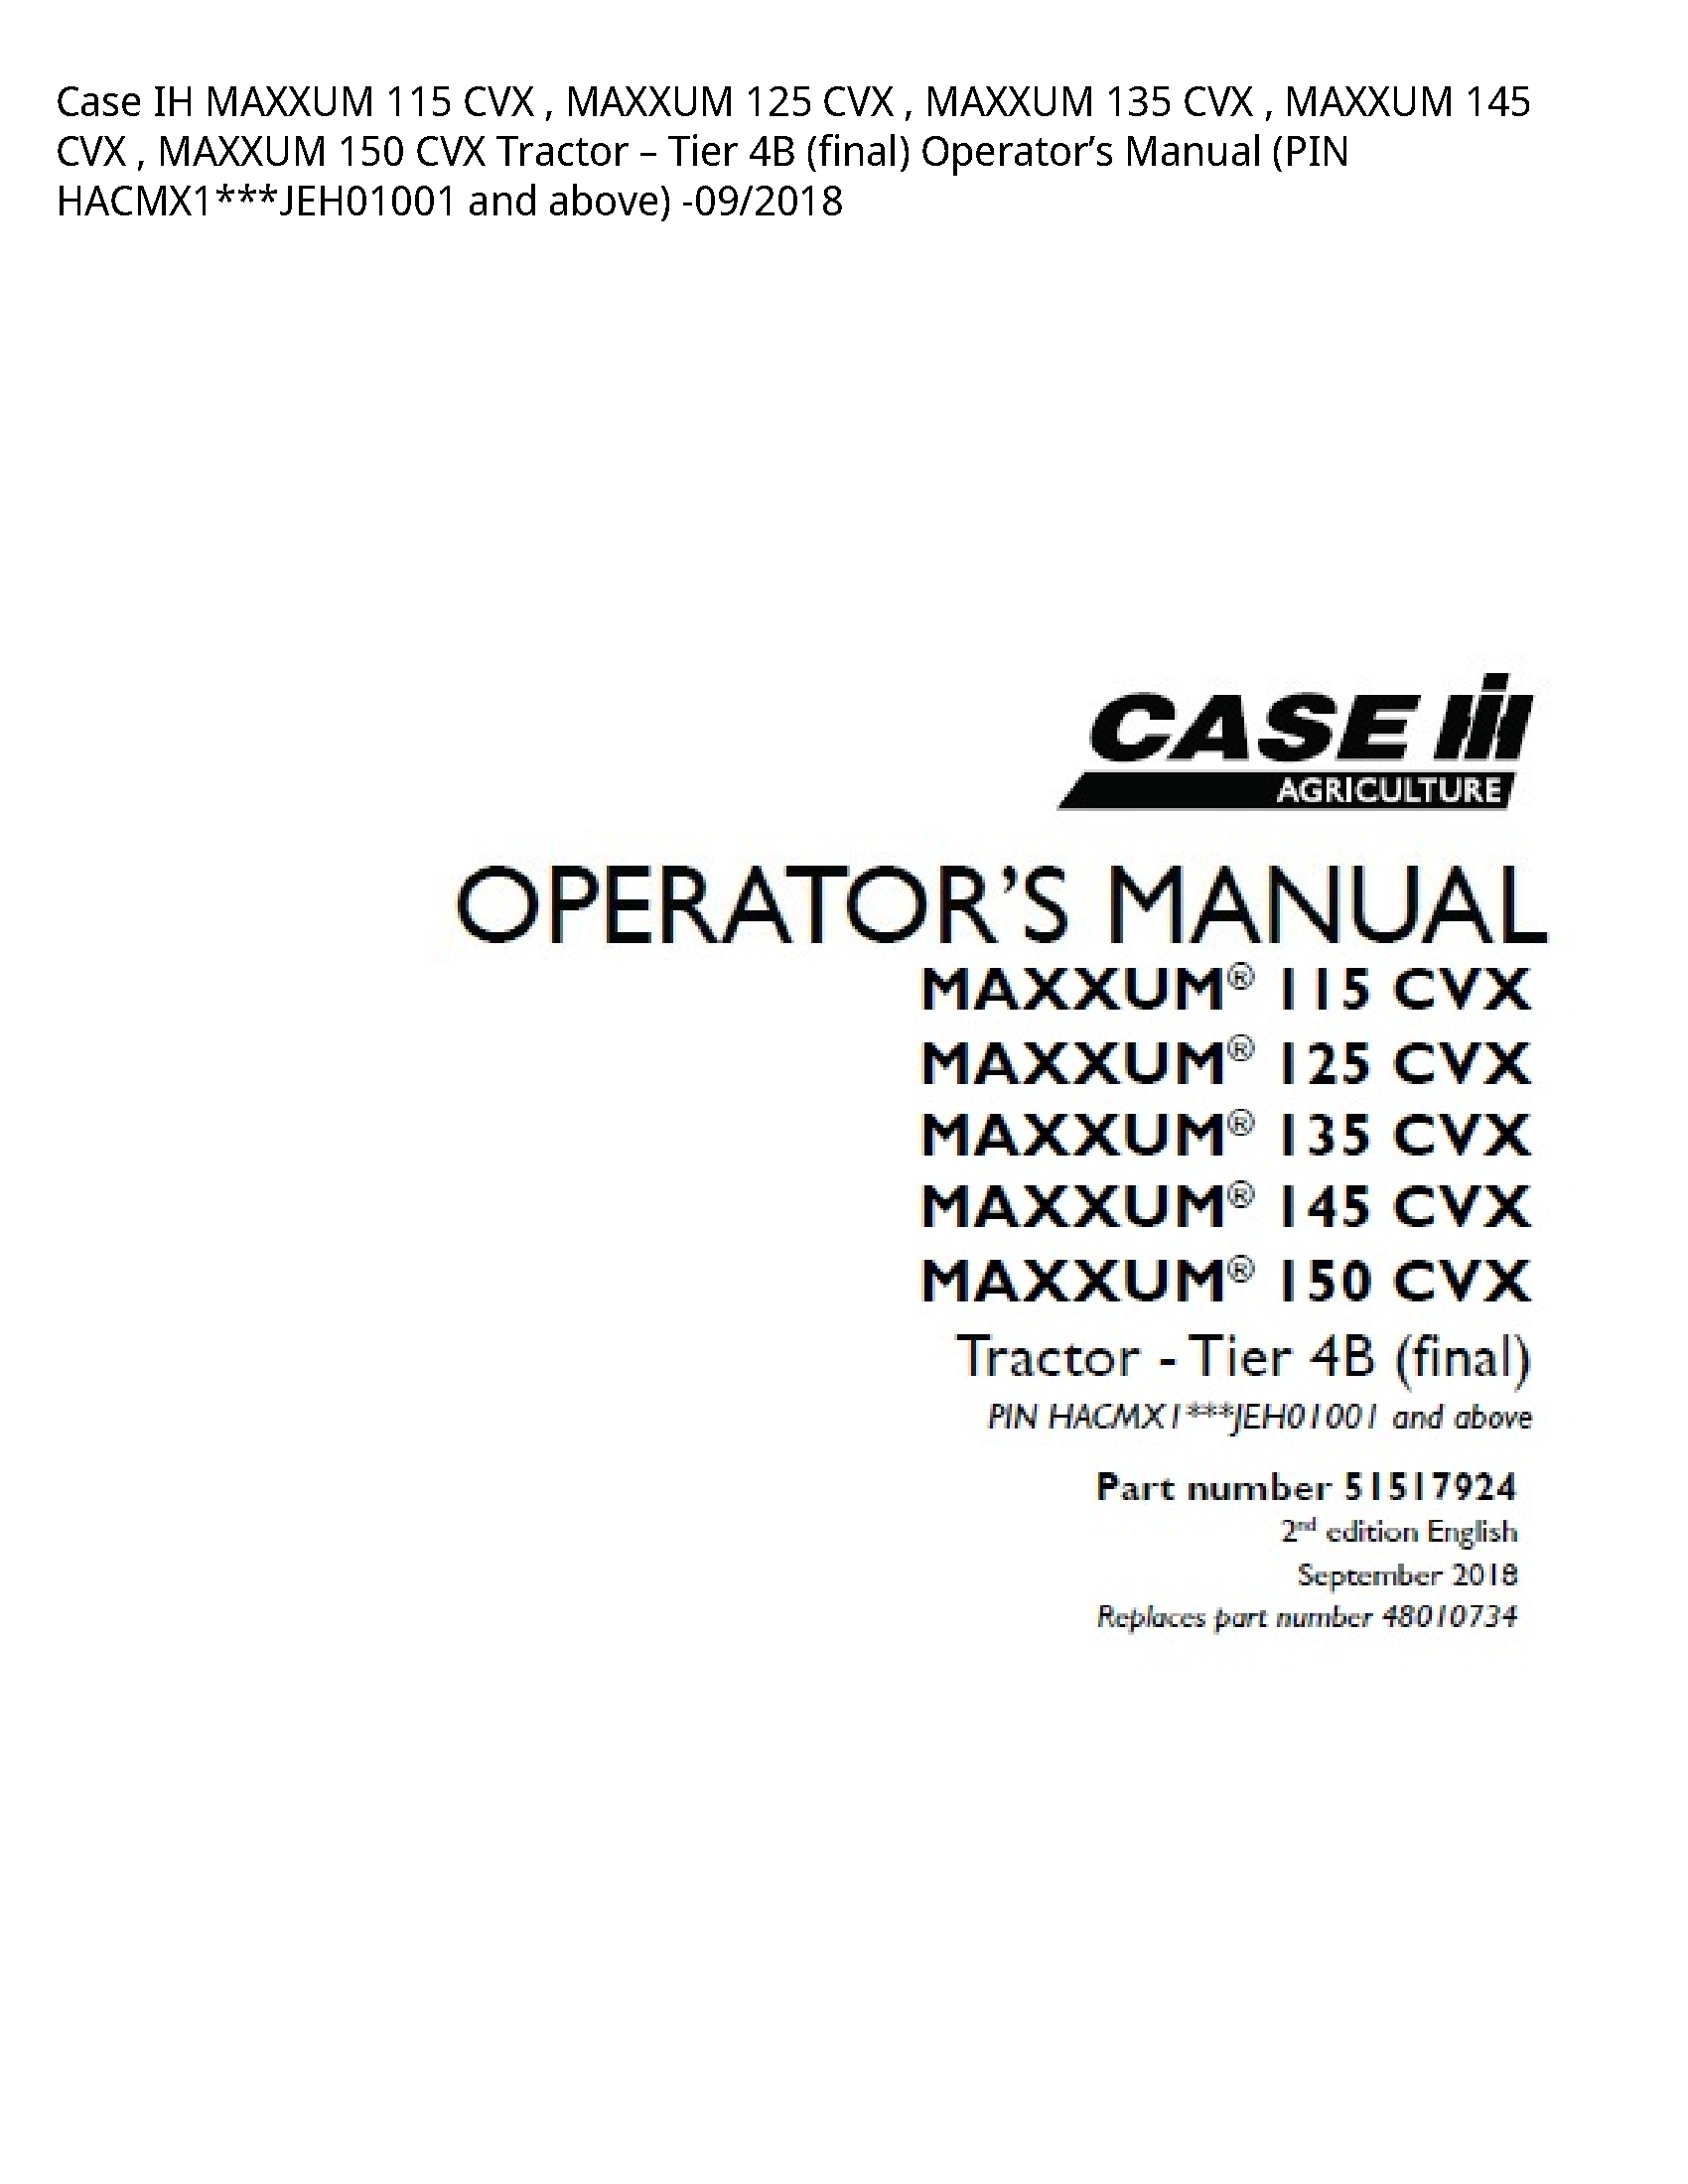 Case/Case IH 115 IH MAXXUM CVX MAXXUM CVX MAXXUM CVX MAXXUM CVX MAXXUM CVX Tractor Tier (final) Operator’s manual